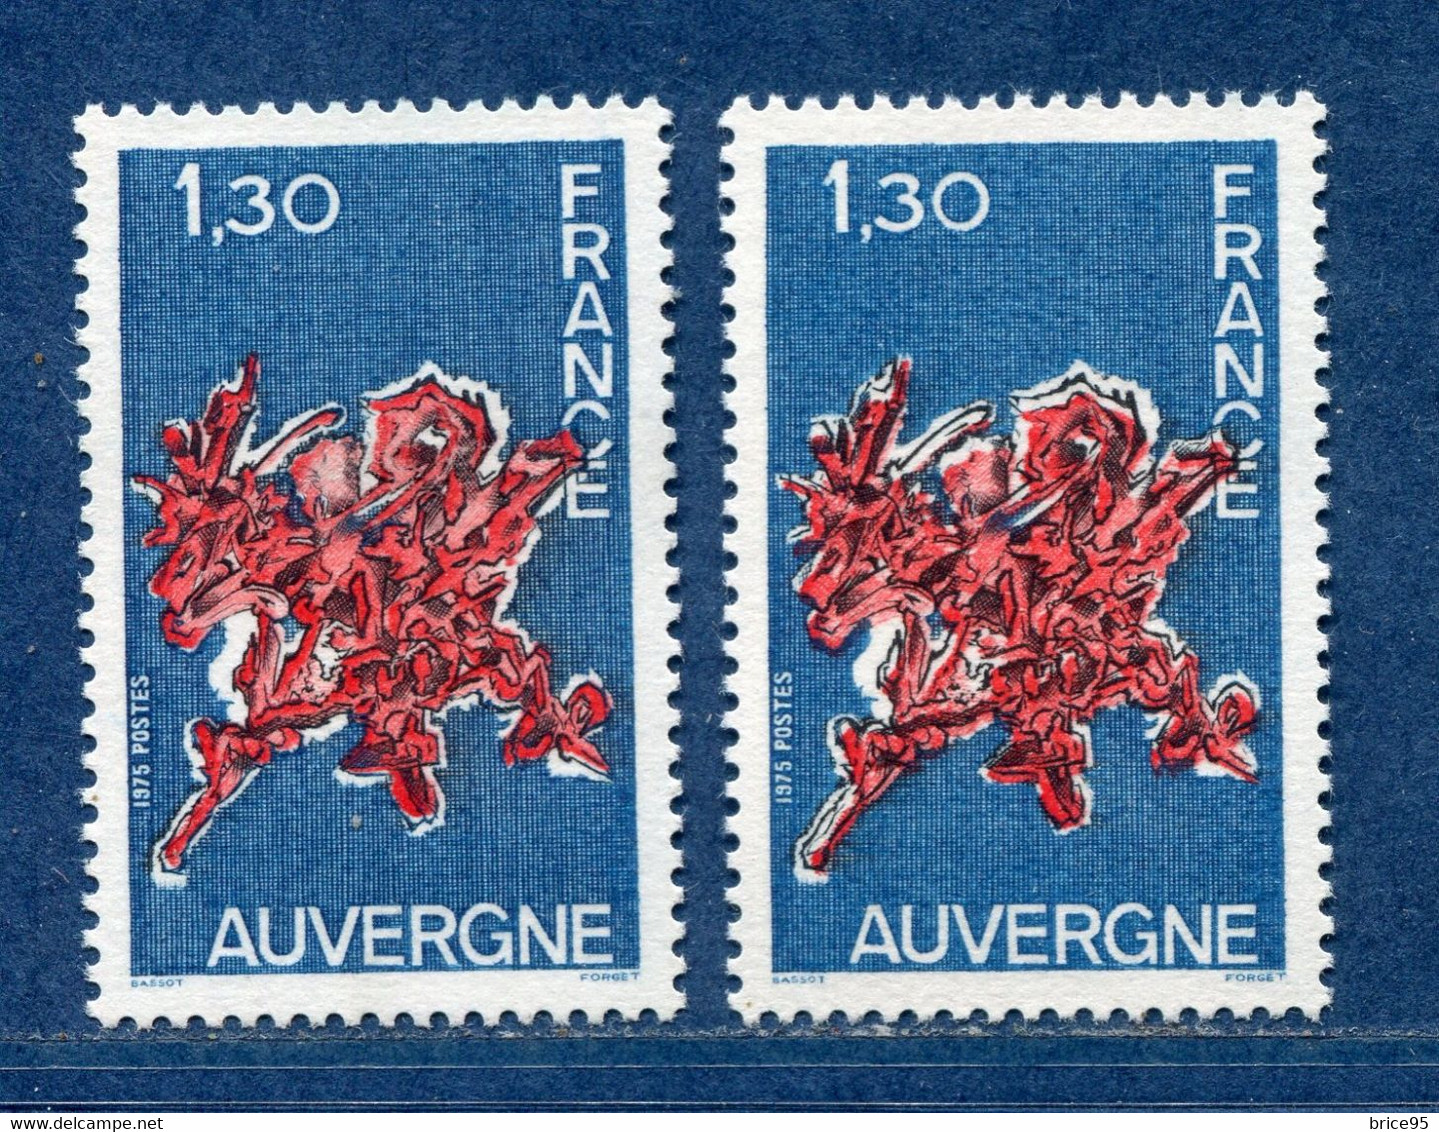 ⭐ France - Variété - YT N° 1850 - Couleurs - Pétouille - Neuf Sans Charnière - 1975 ⭐ - Nuovi